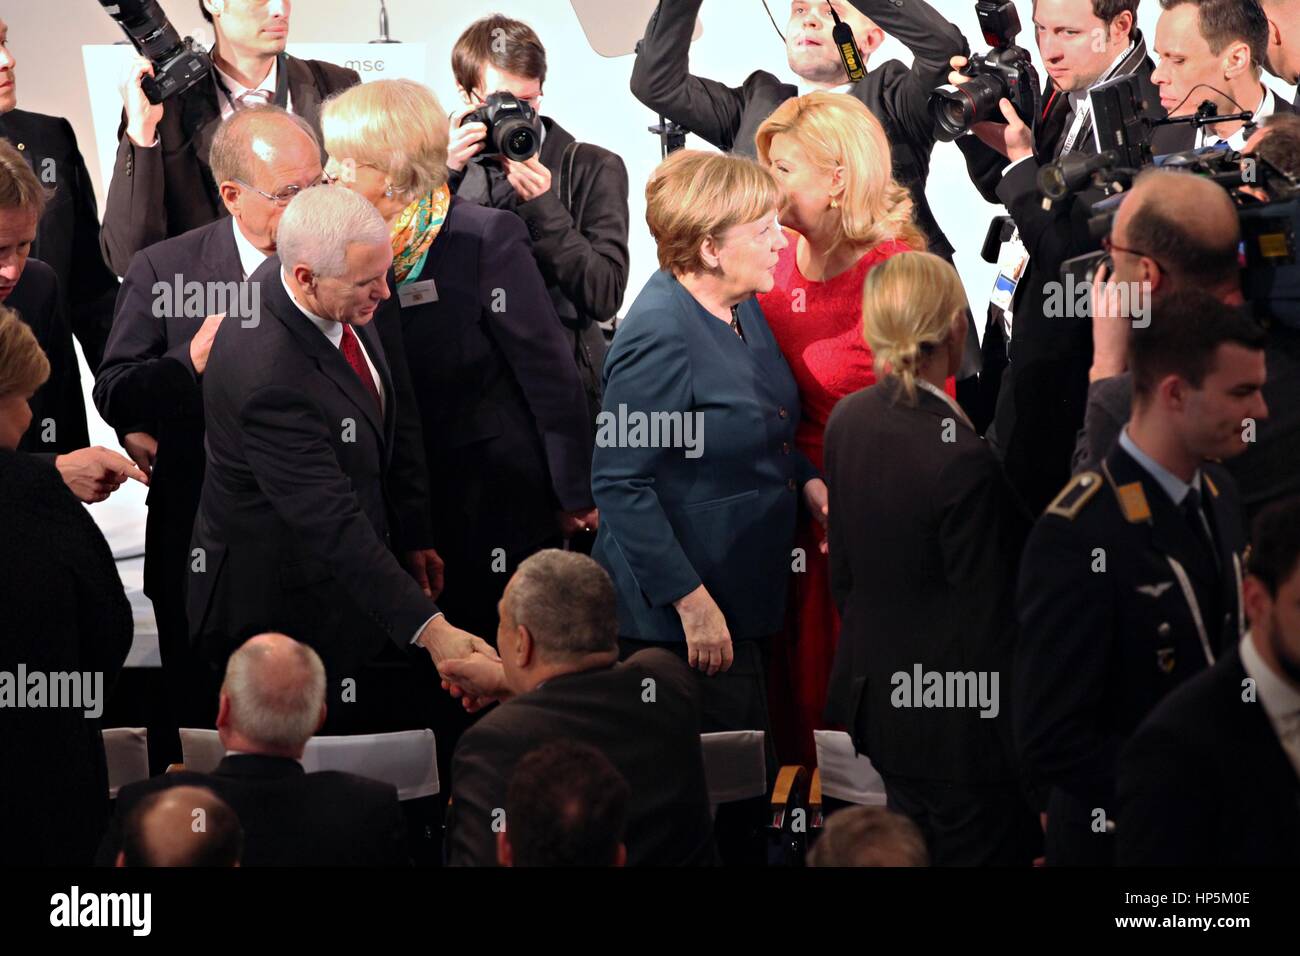 Munich, Alemania. 18 Feb, 2017. La Canciller alemana Angela Merkel escorts vicepresidente de EE.UU. Mike Pence a través de la multitud en la Conferencia de Seguridad de Munich el 18 de febrero de 2017 en Munich, Alemania. Pence dijeron más tarde a los aliados europeos que "los Estados Unidos de América apoya firmemente la OTAN y serán firmes en nuestro compromiso con esta alianza transatlántica". Crédito: Planetpix/Alamy Live News Foto de stock